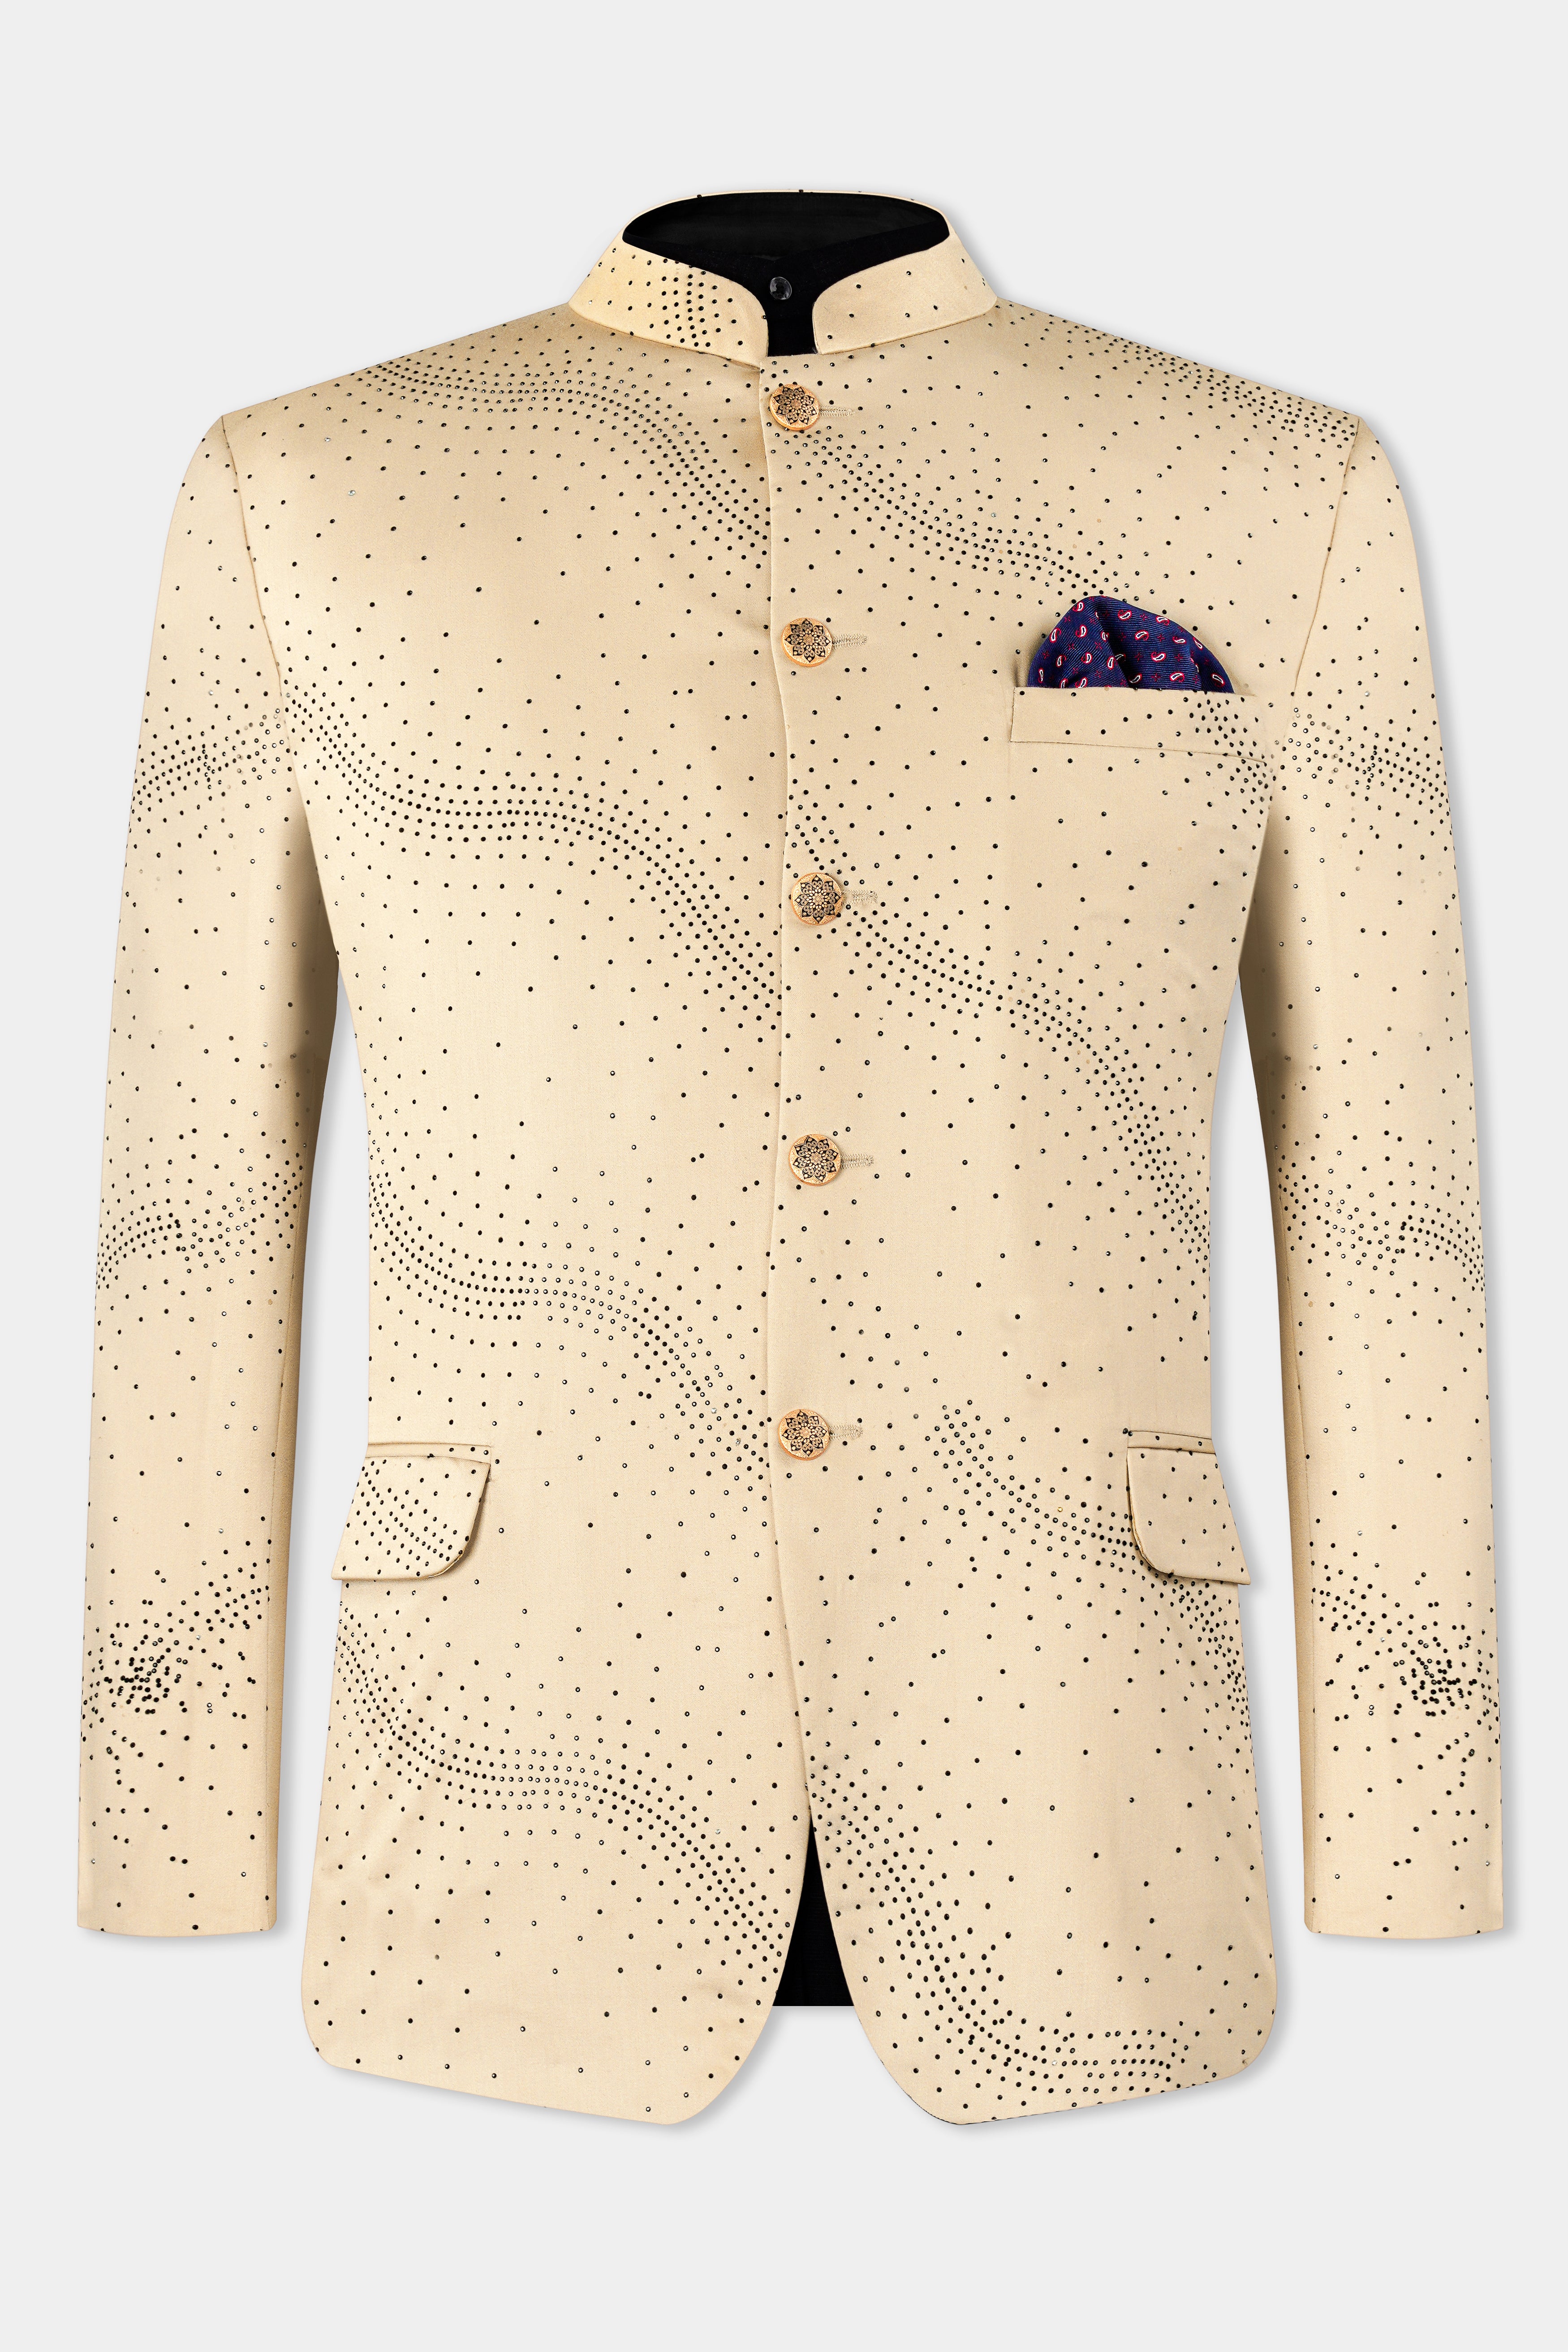 Cream Thread Work Jacket Style Jodhpuri Suit